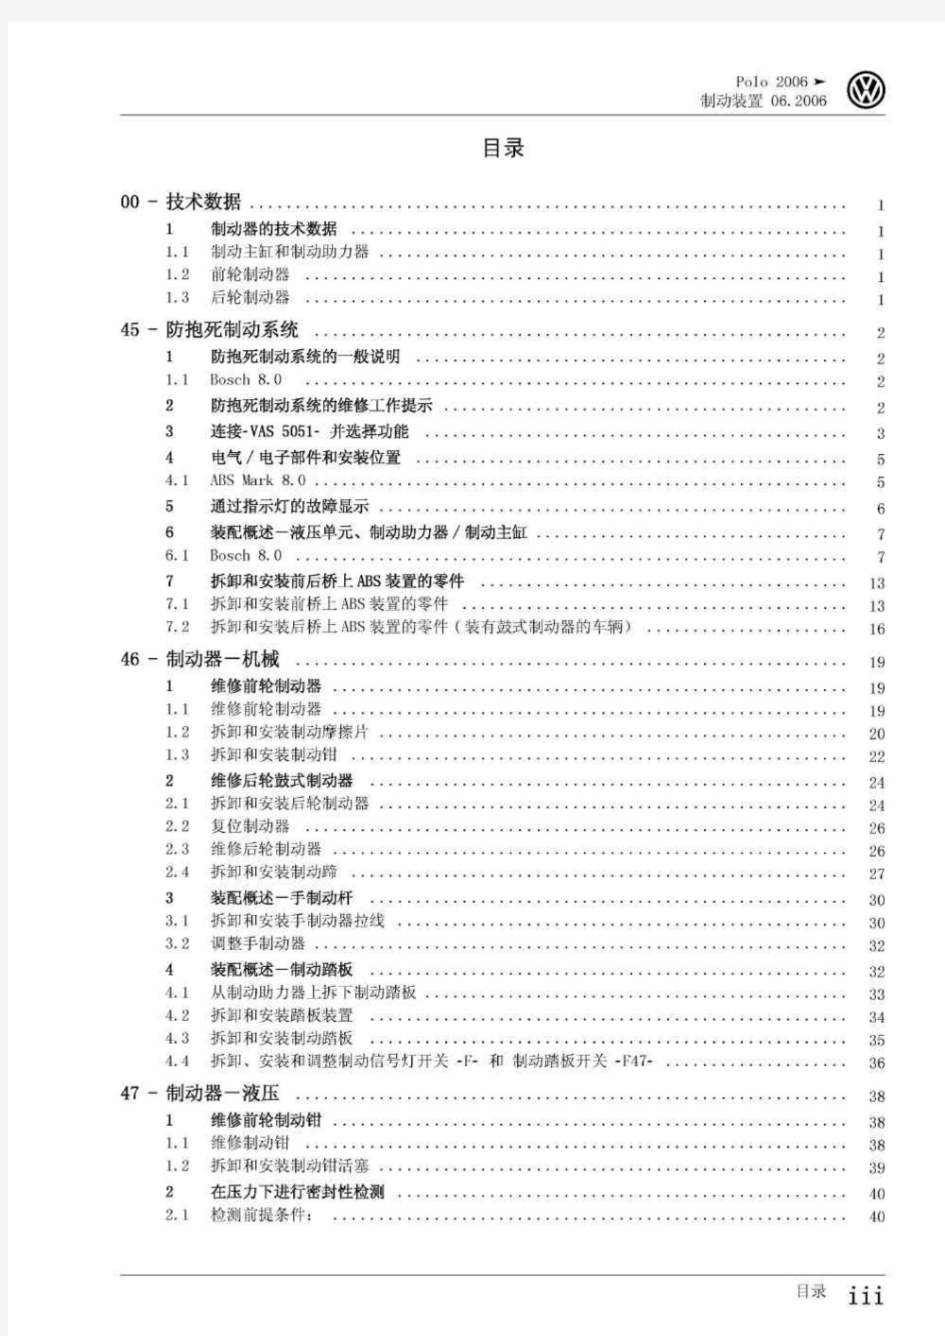 上海POLO轿车制动系统维修手册